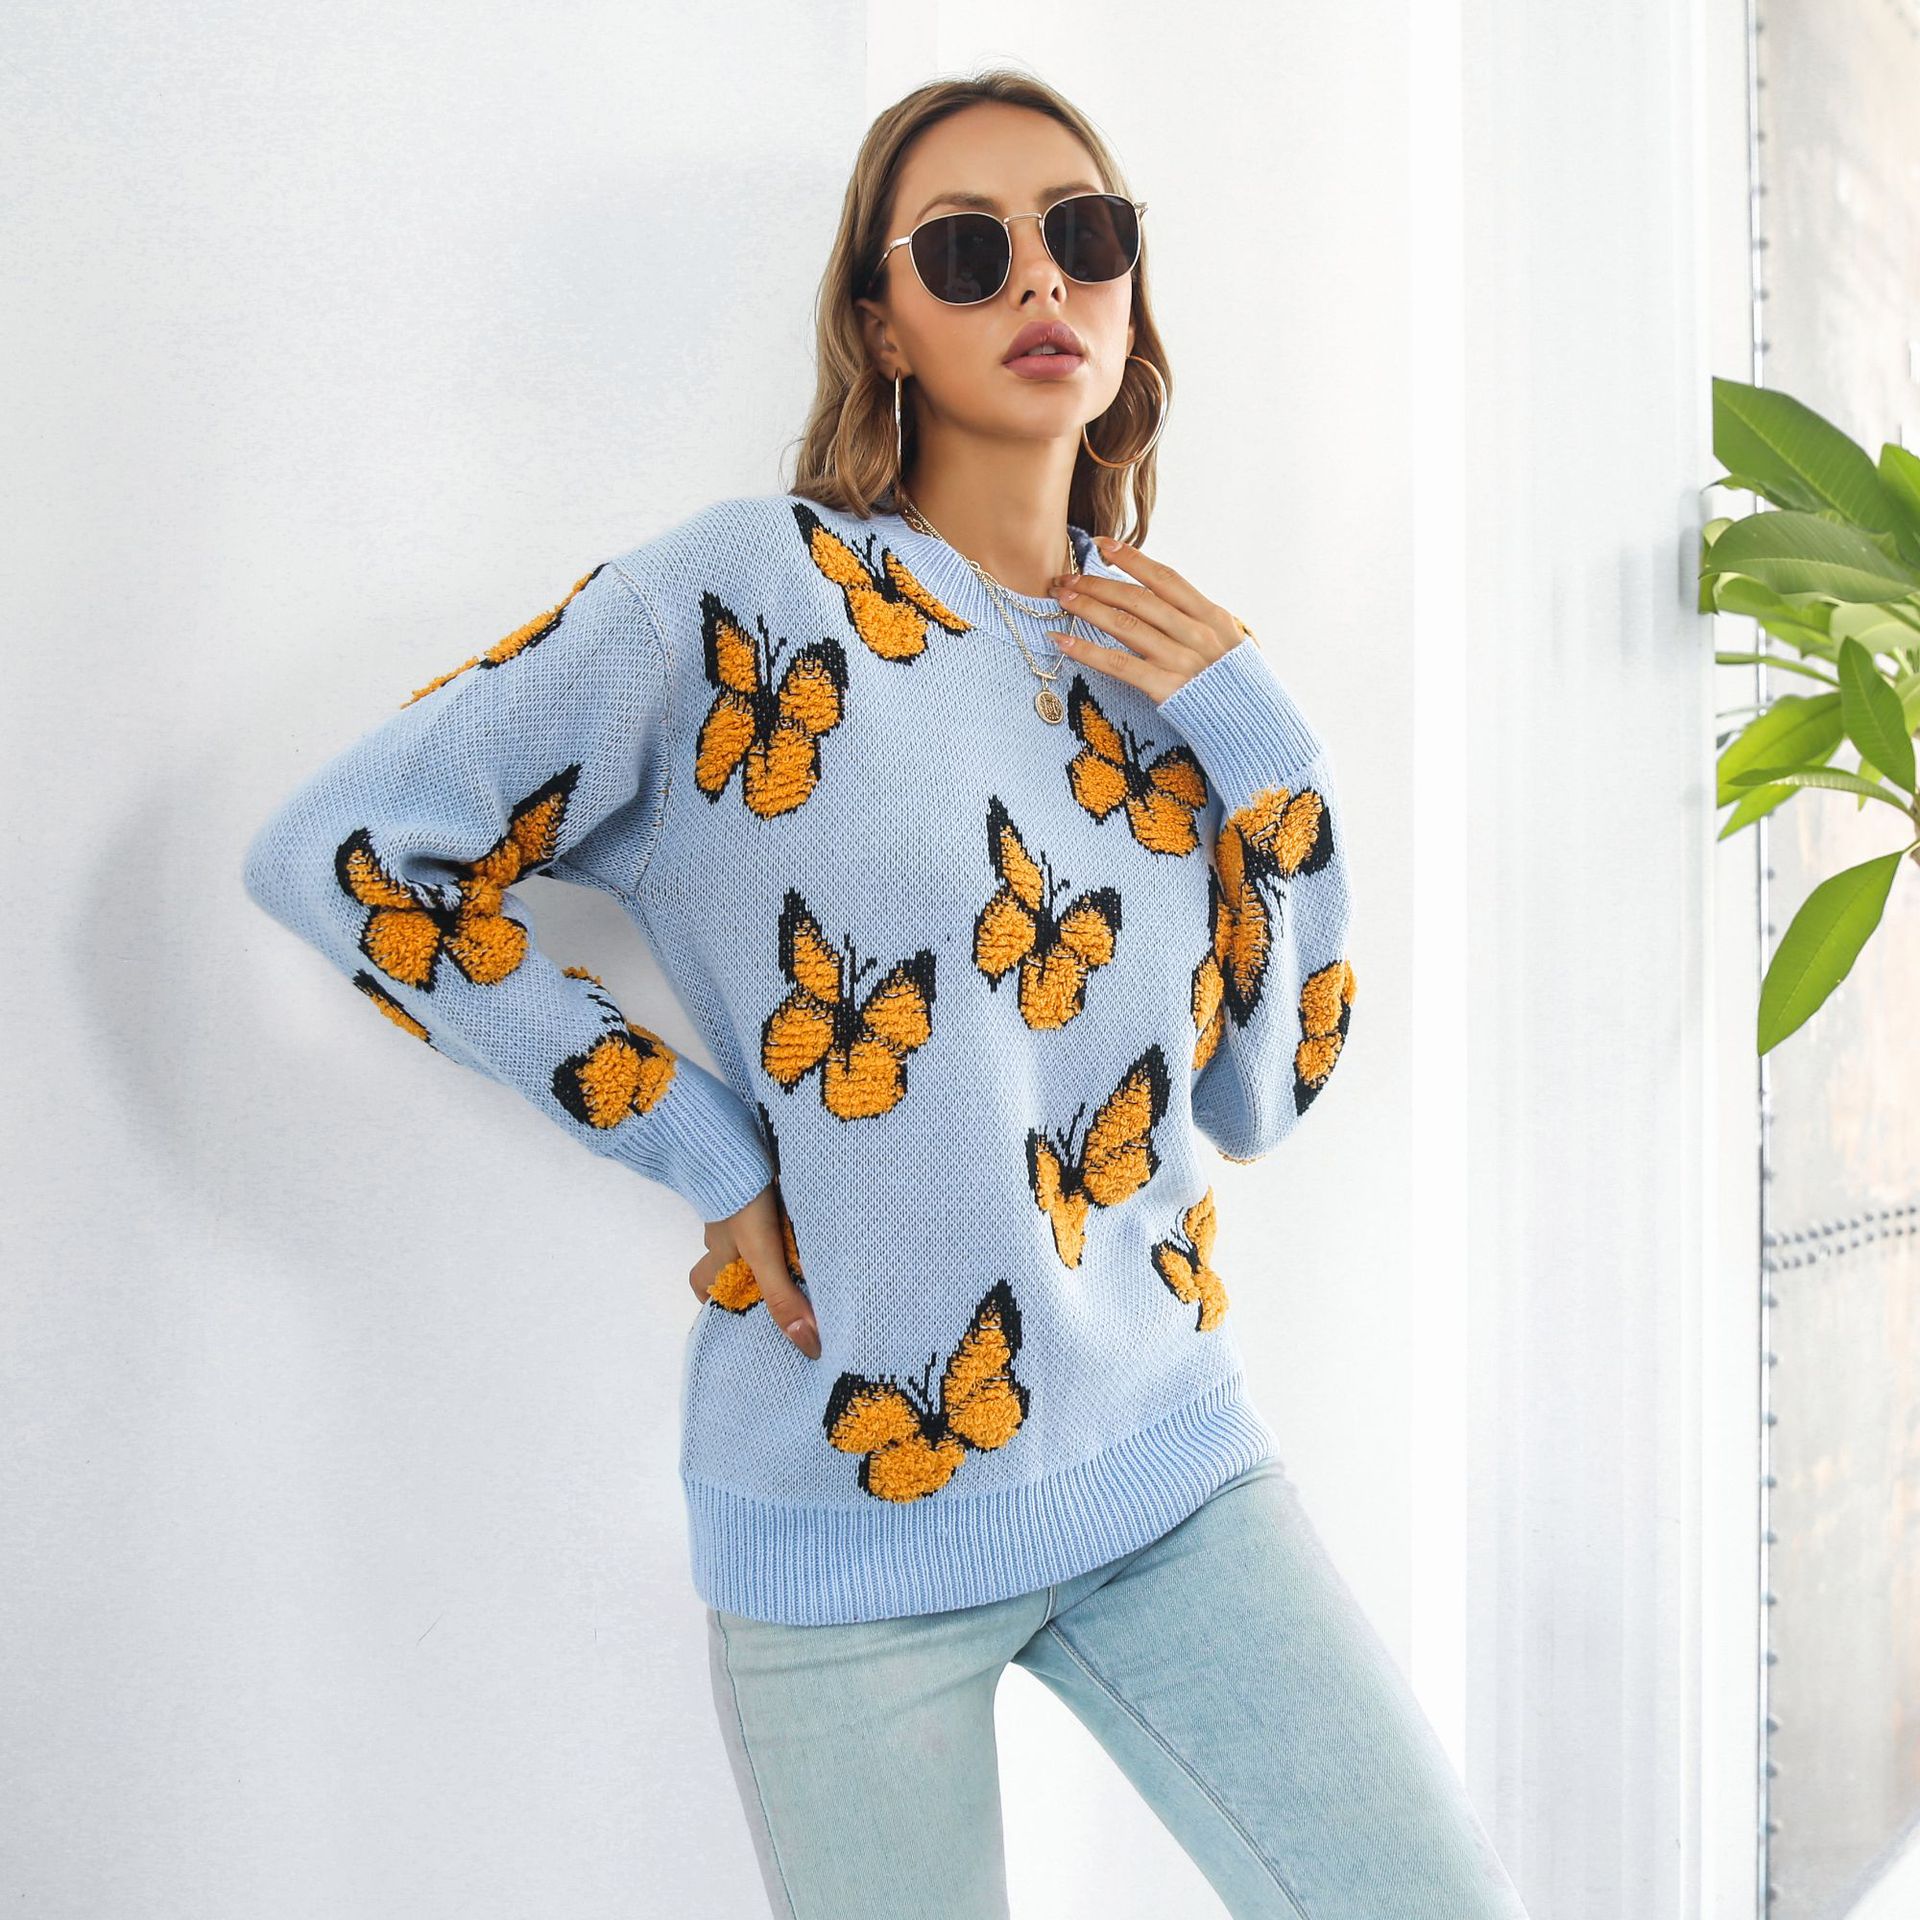 Butterfly Sweater Women's Loose Sweater